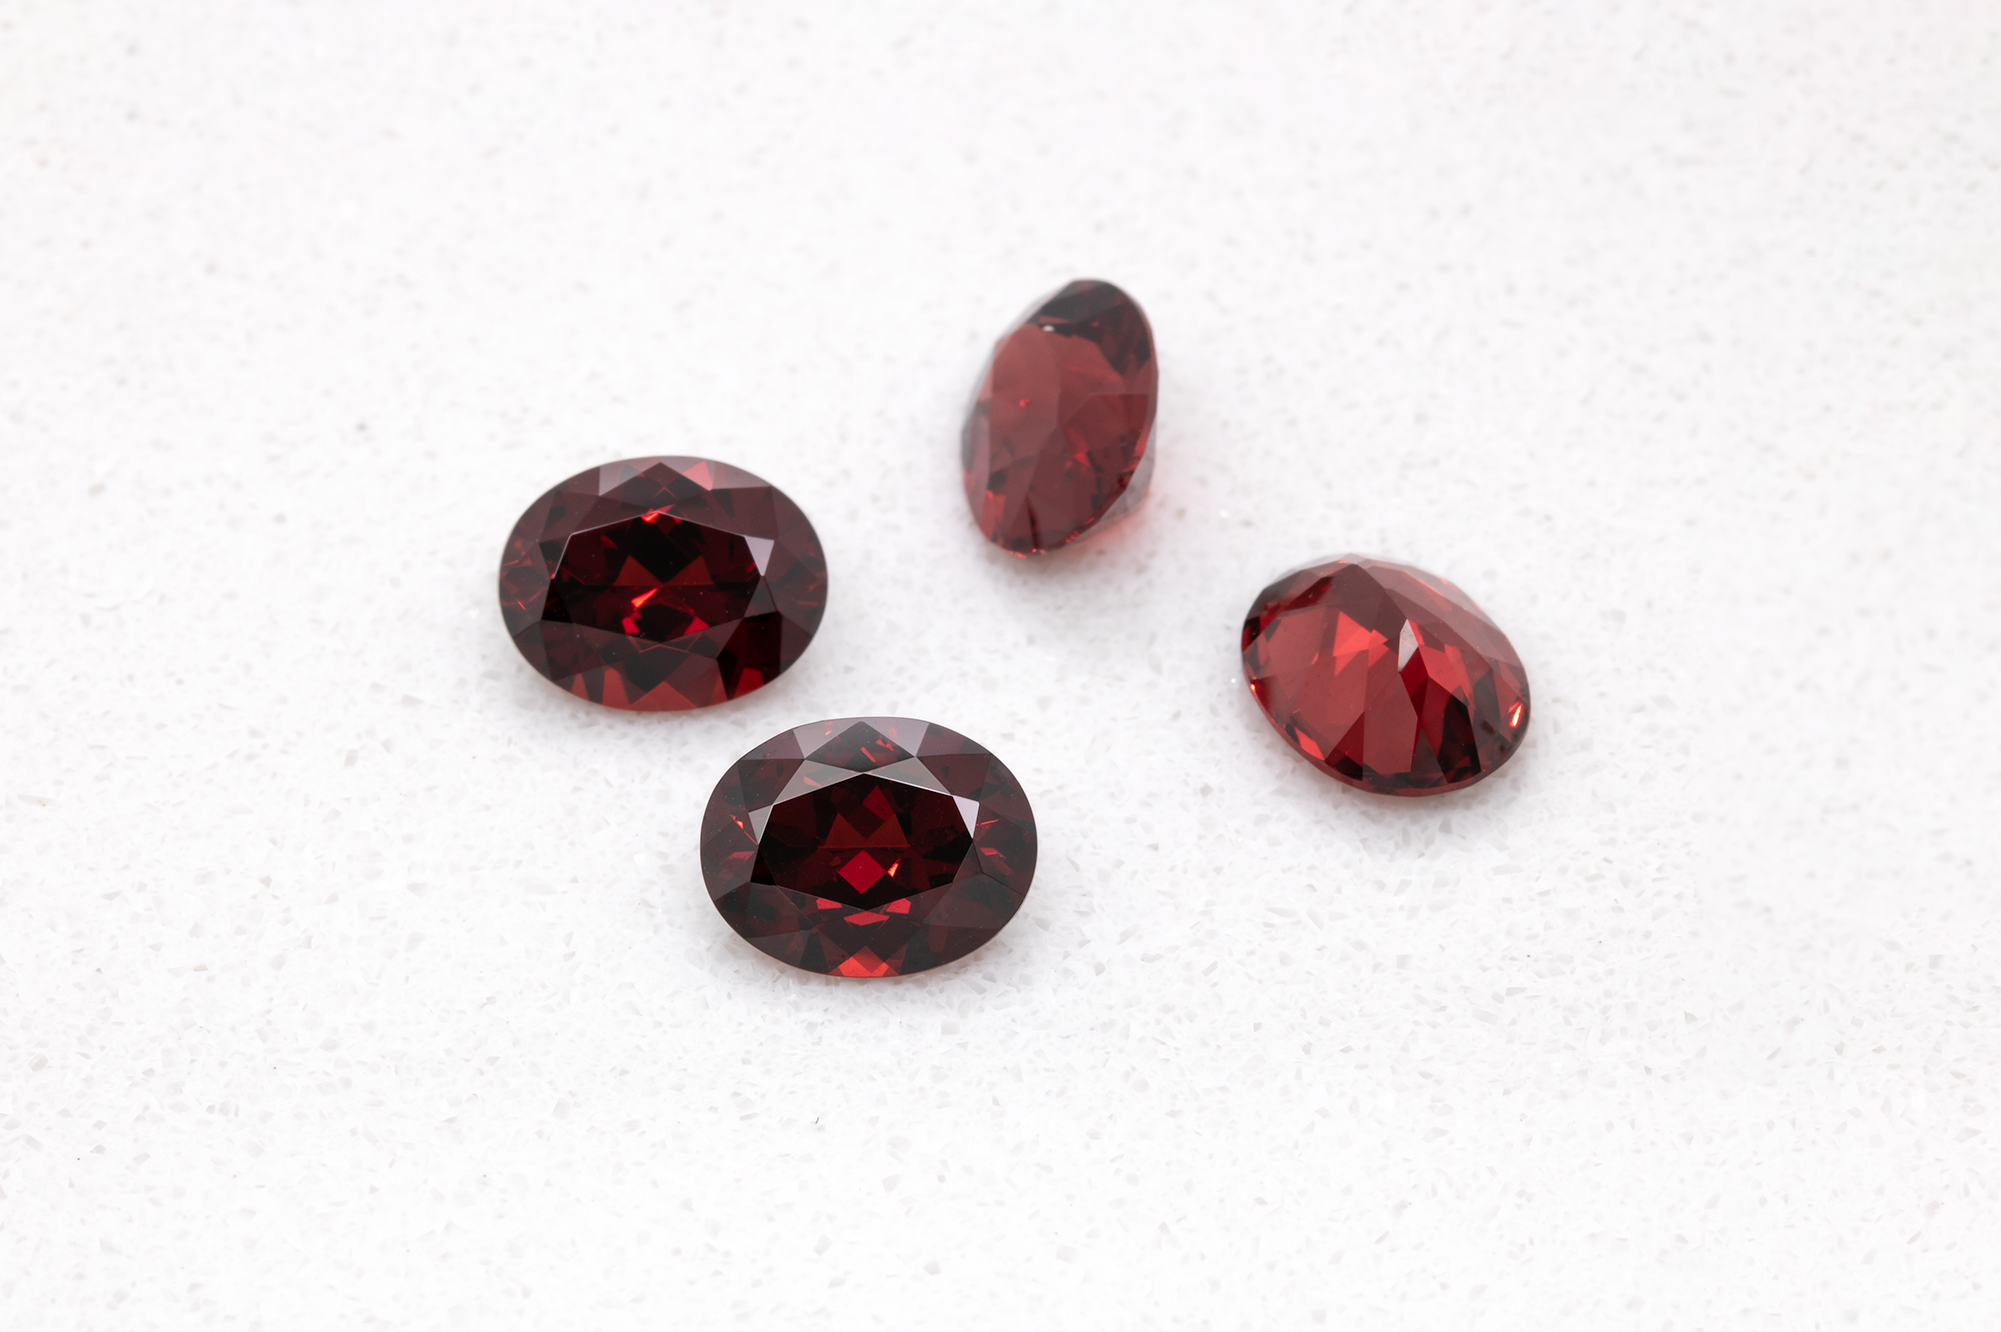 Vier Edelsteine der Gruppe Granat in dunkel rot